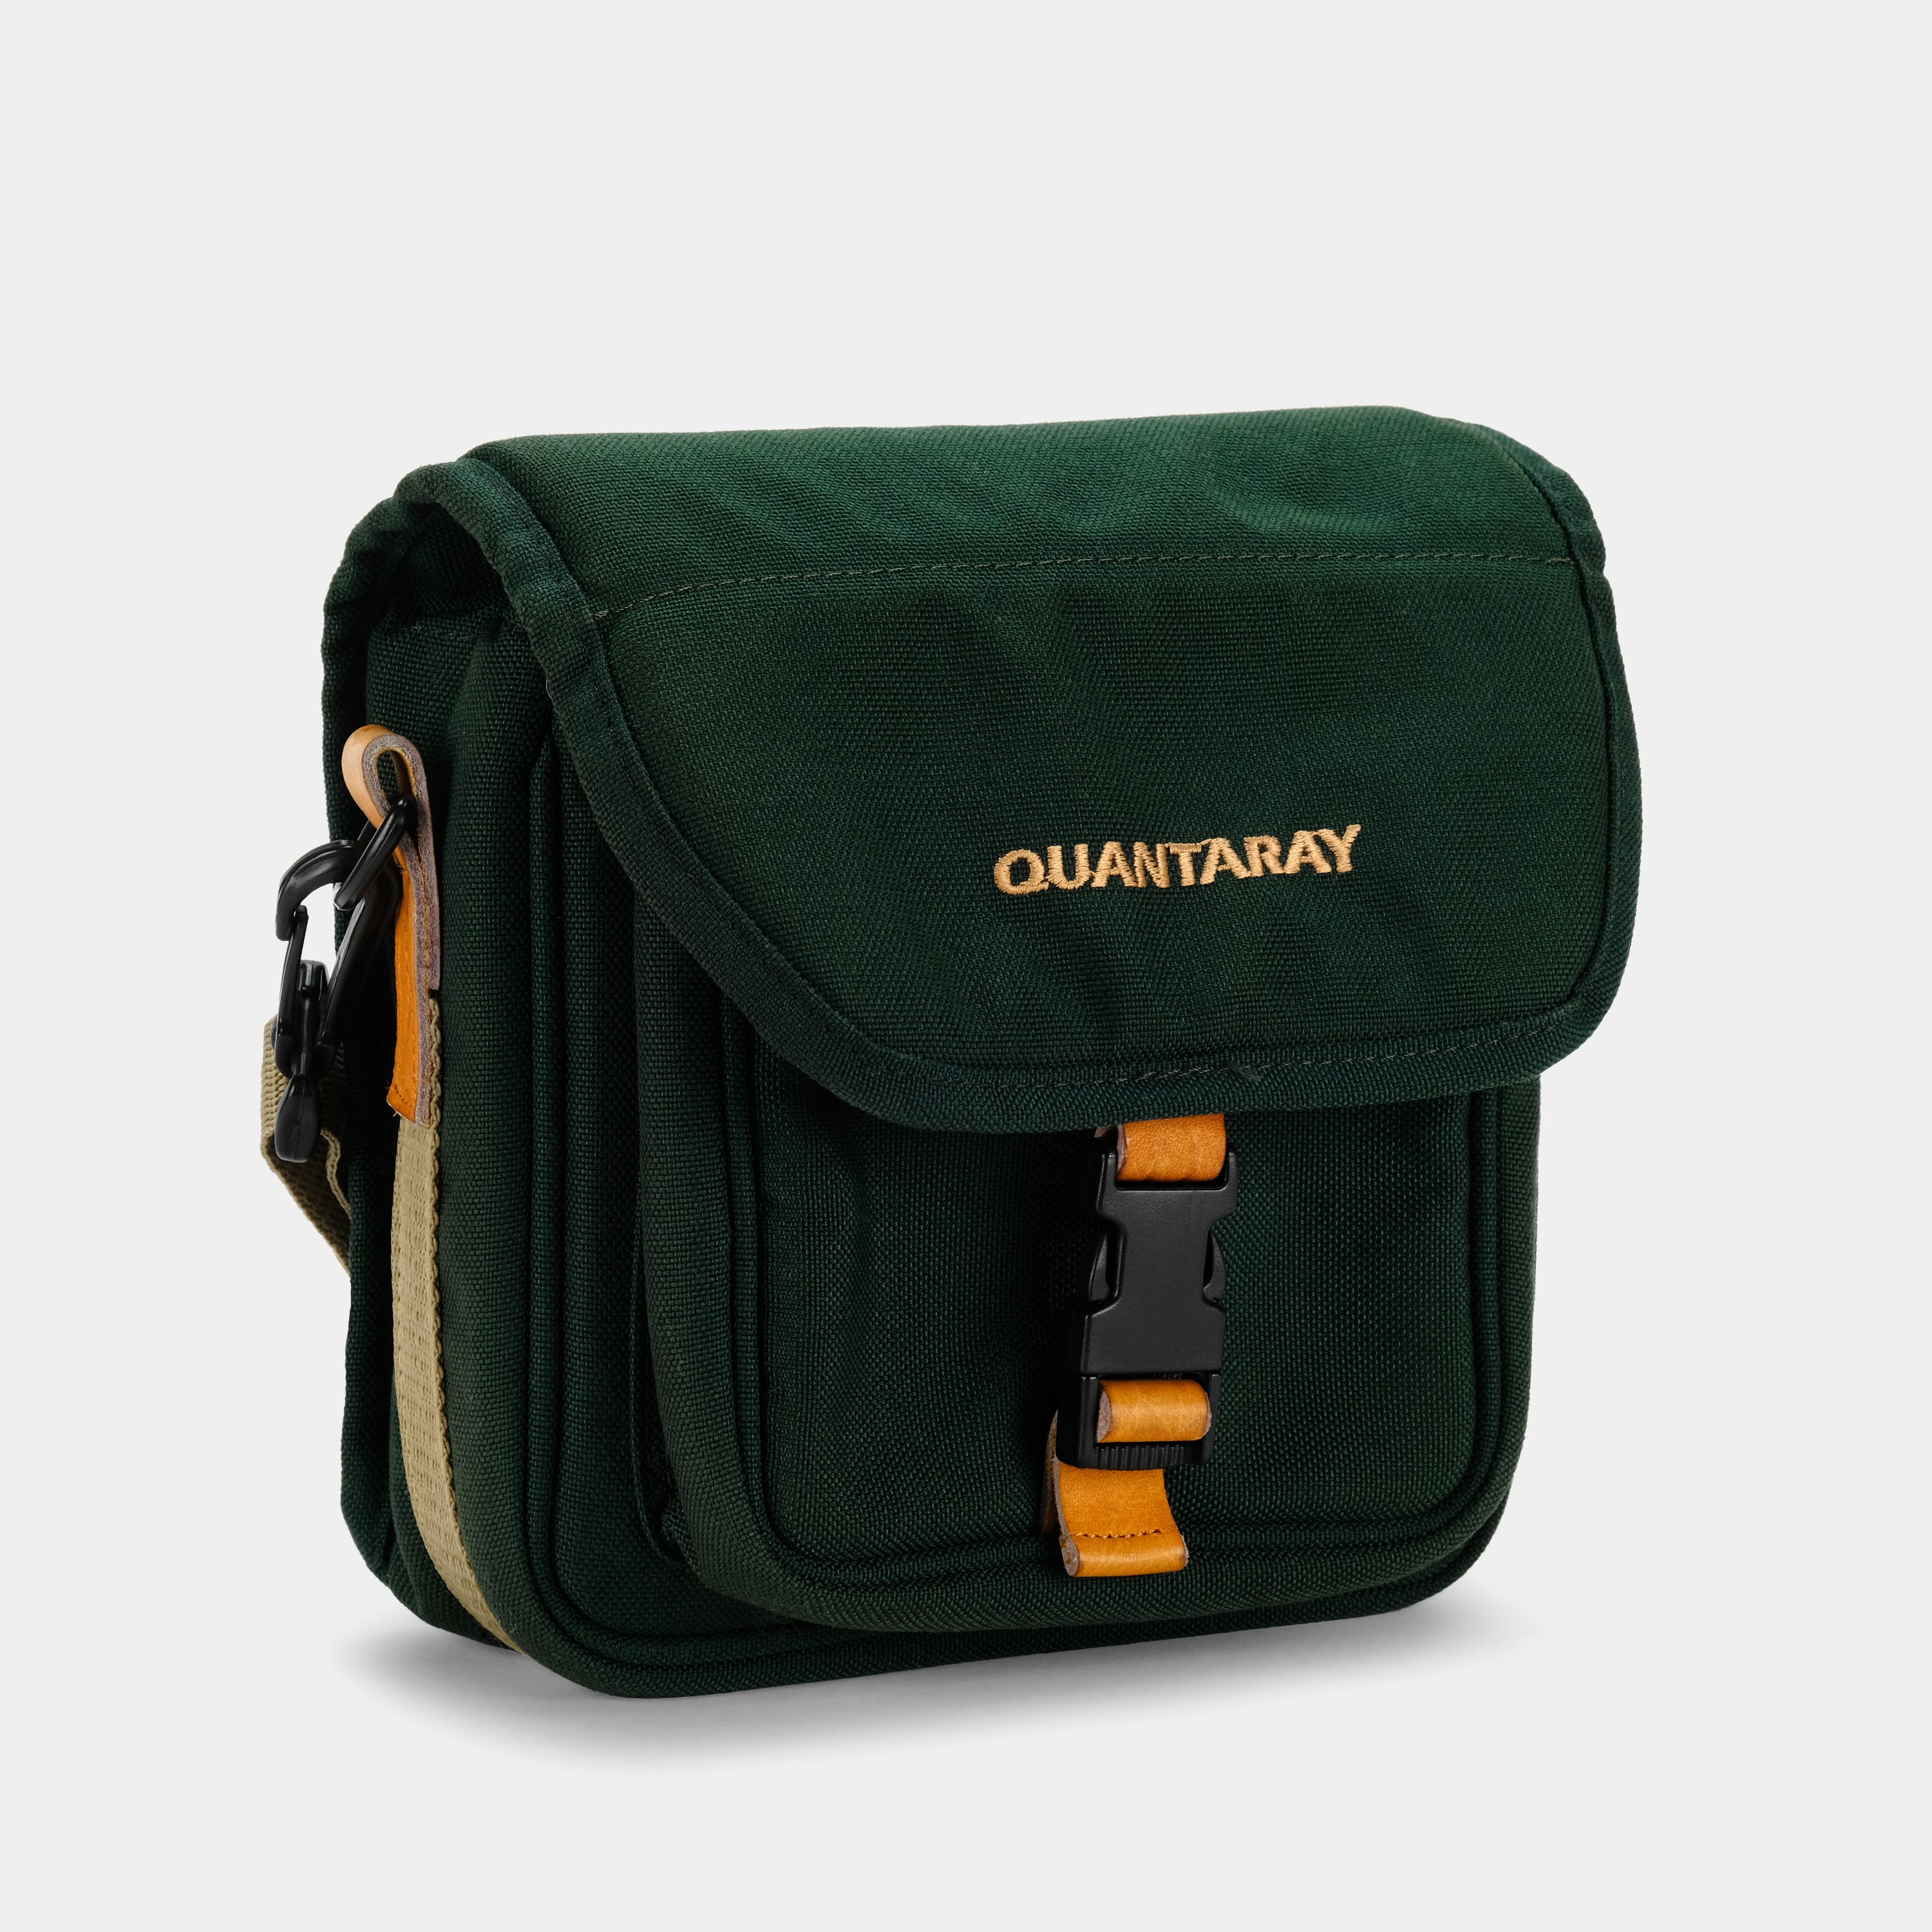 Quantaray Green Camera Bag